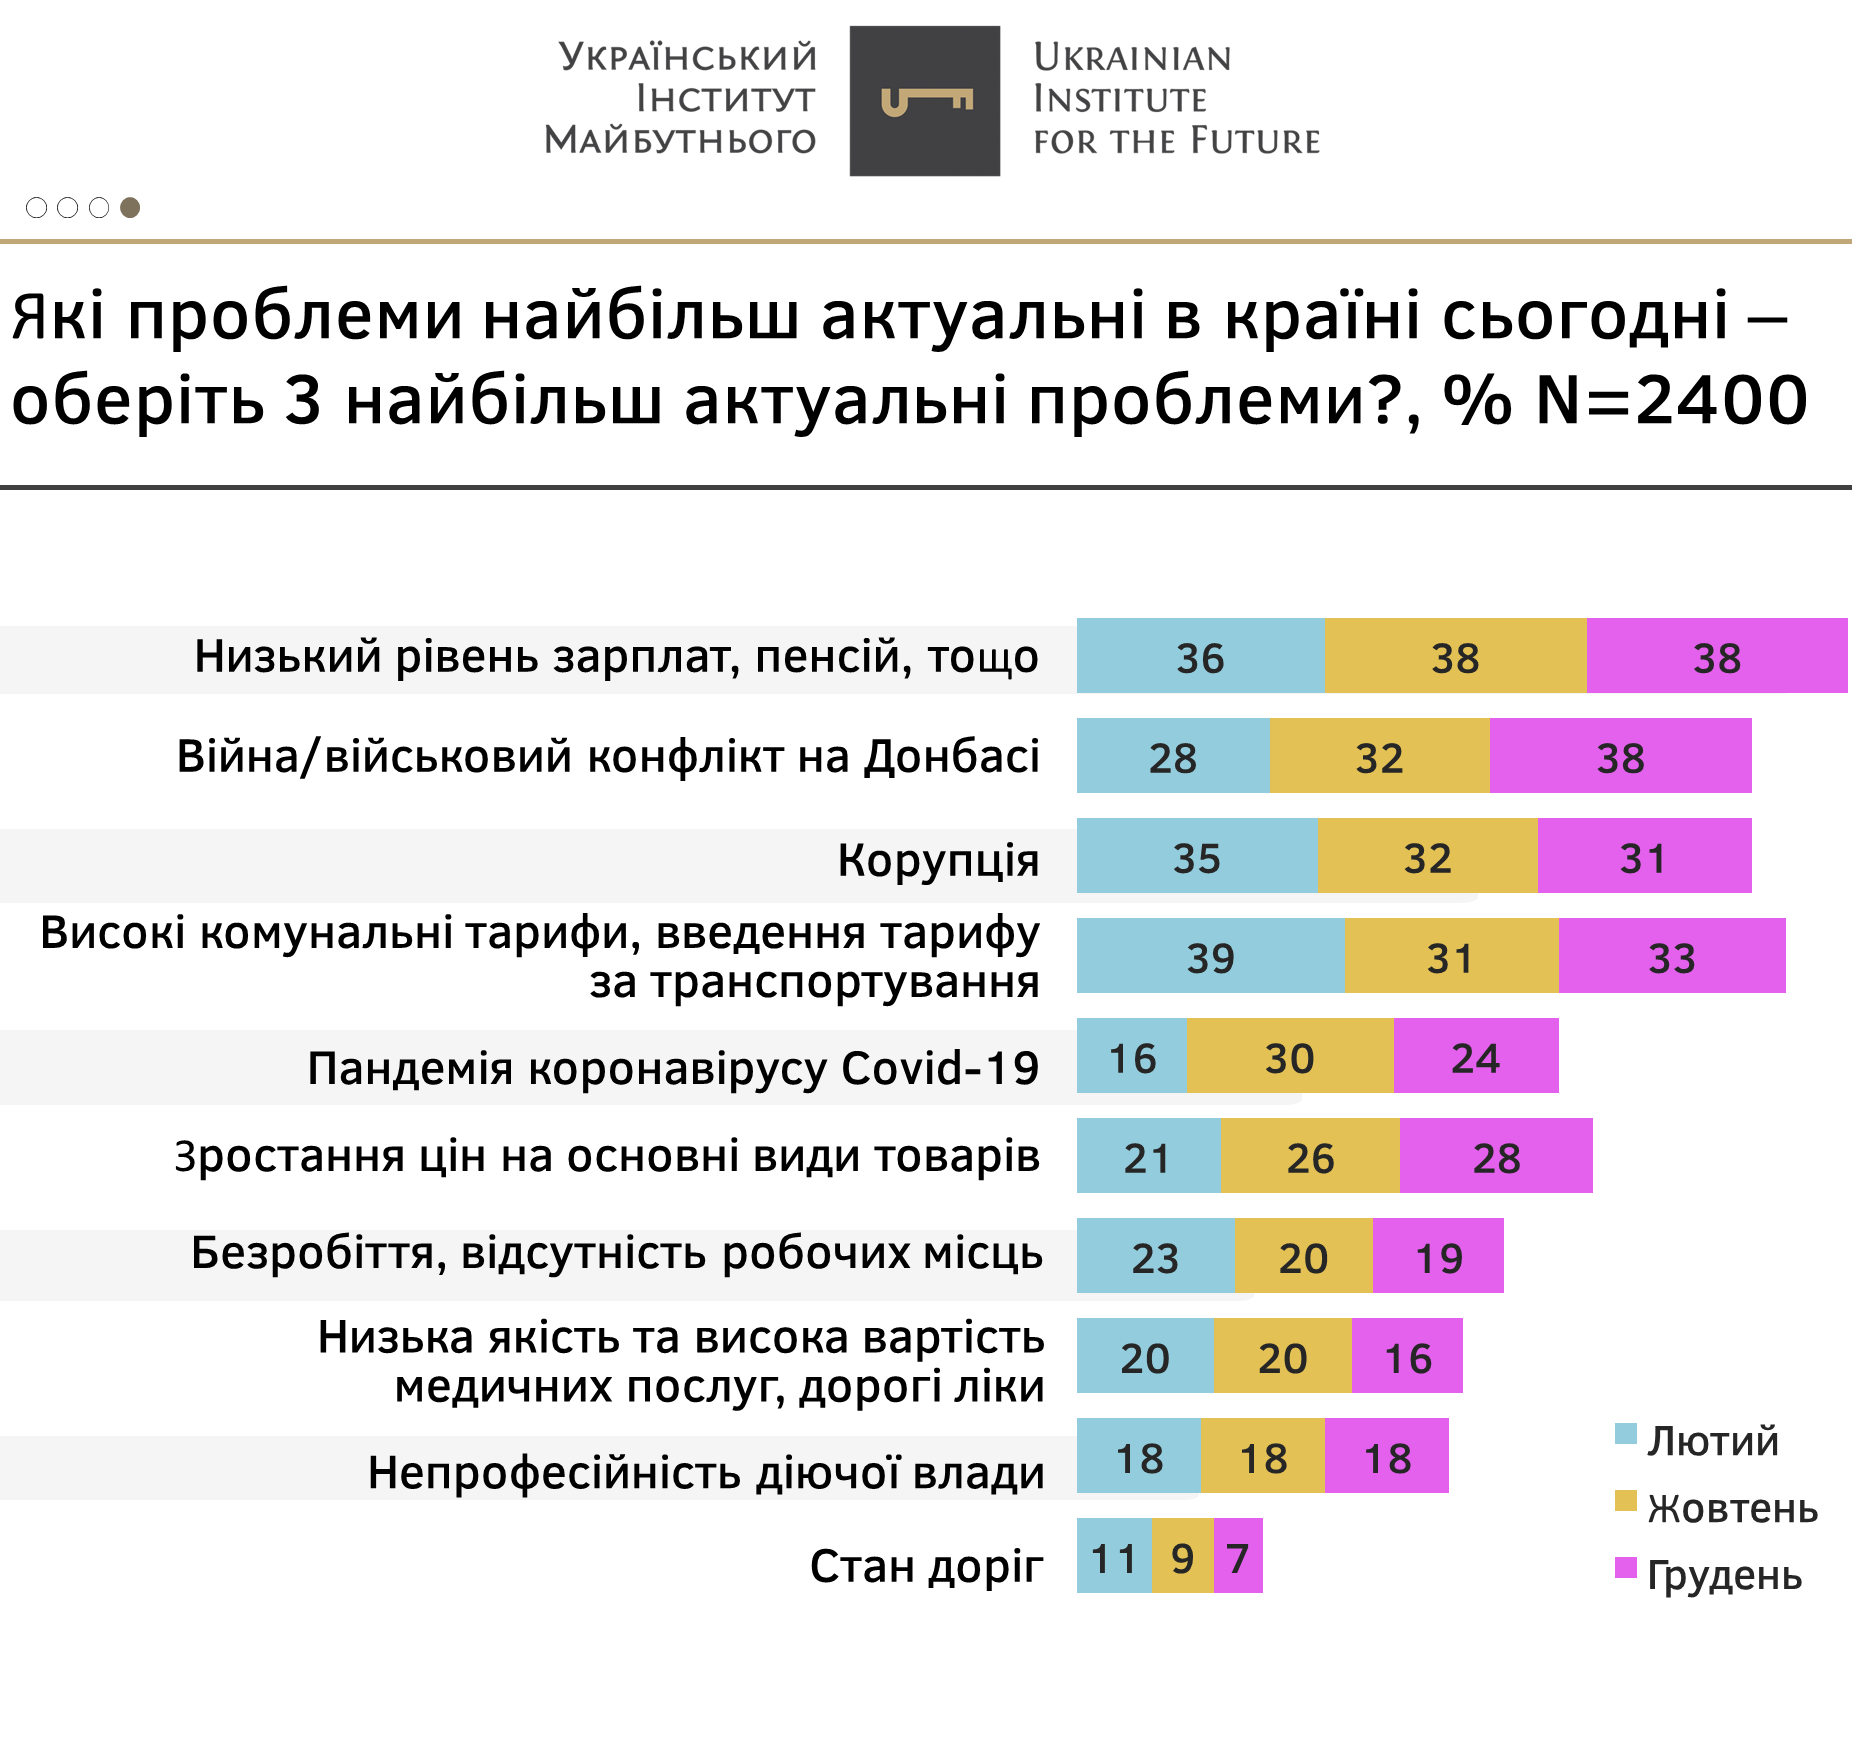 Самые актуальные проблемы в Украине: результаты социологического исследования  - фото 2